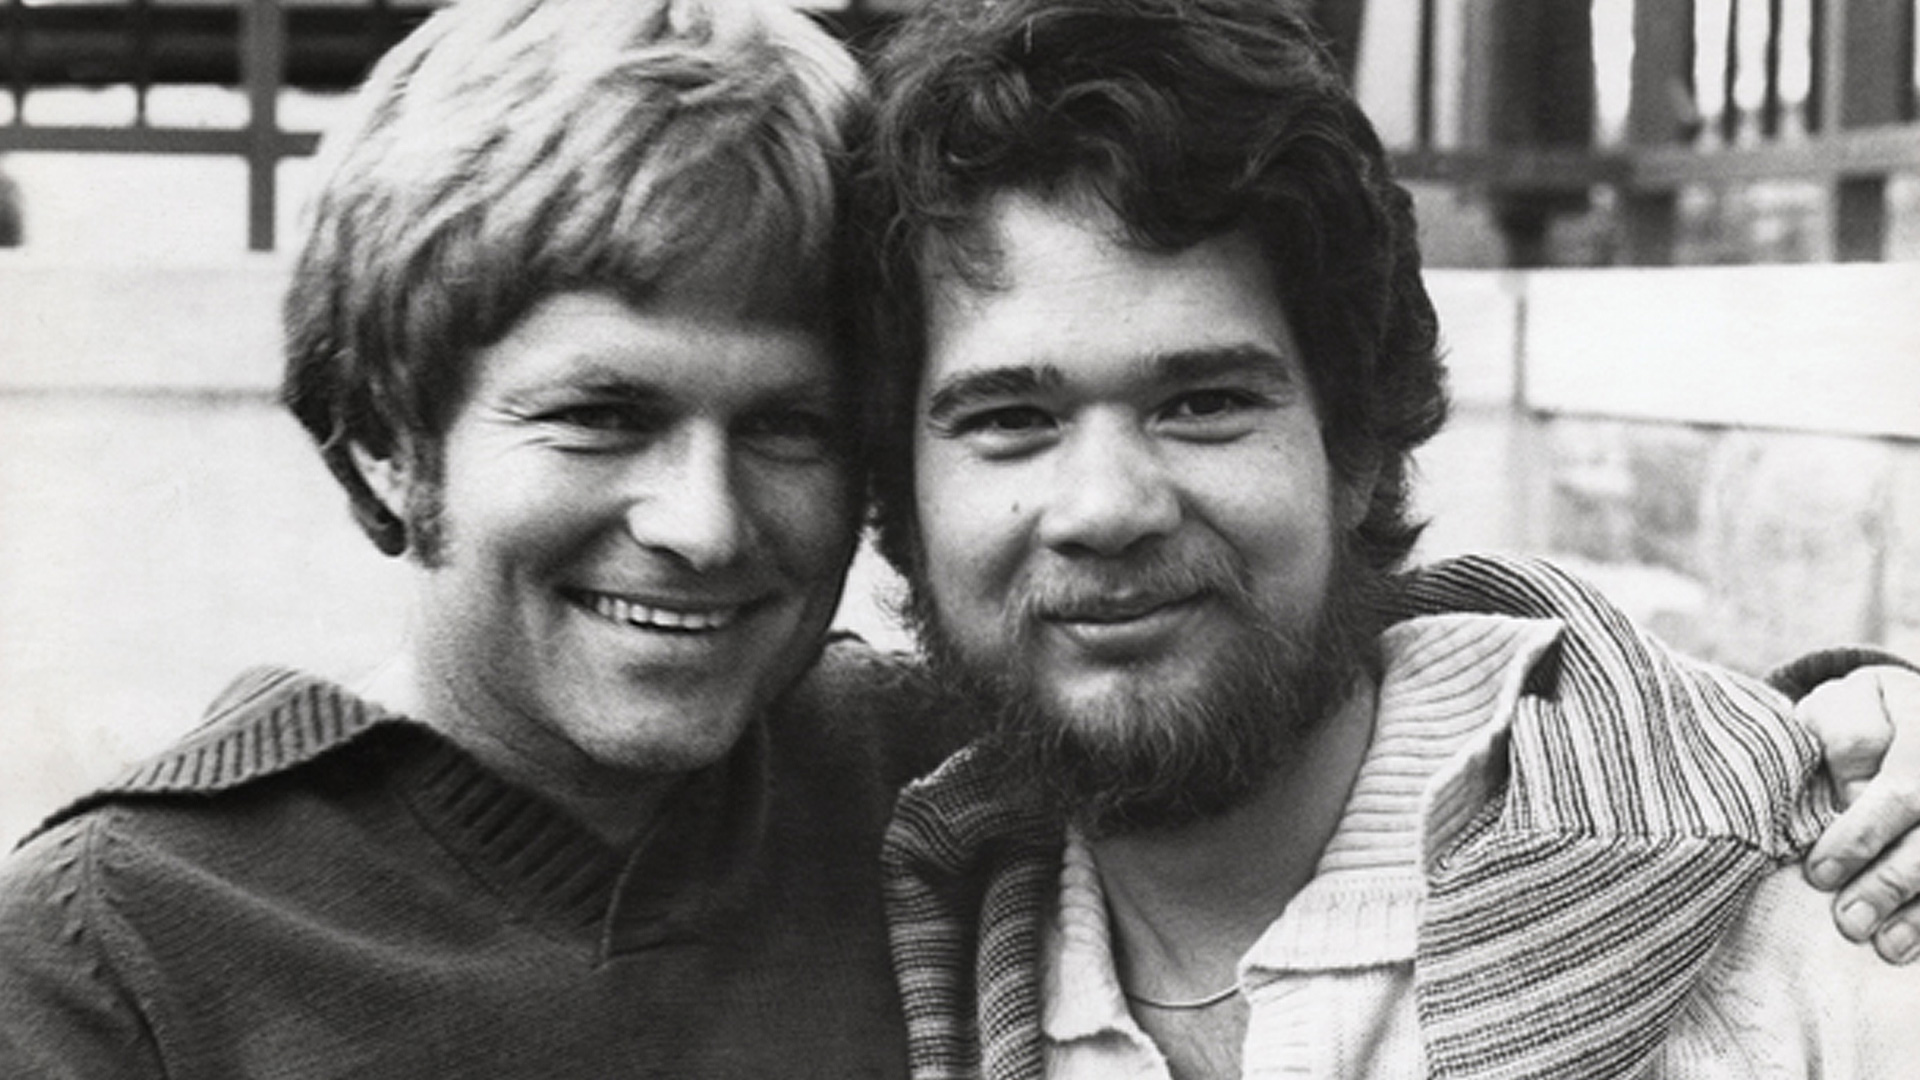 Tony Sullivan (L) and Richard Adams (R) prepare for protest march. 1975